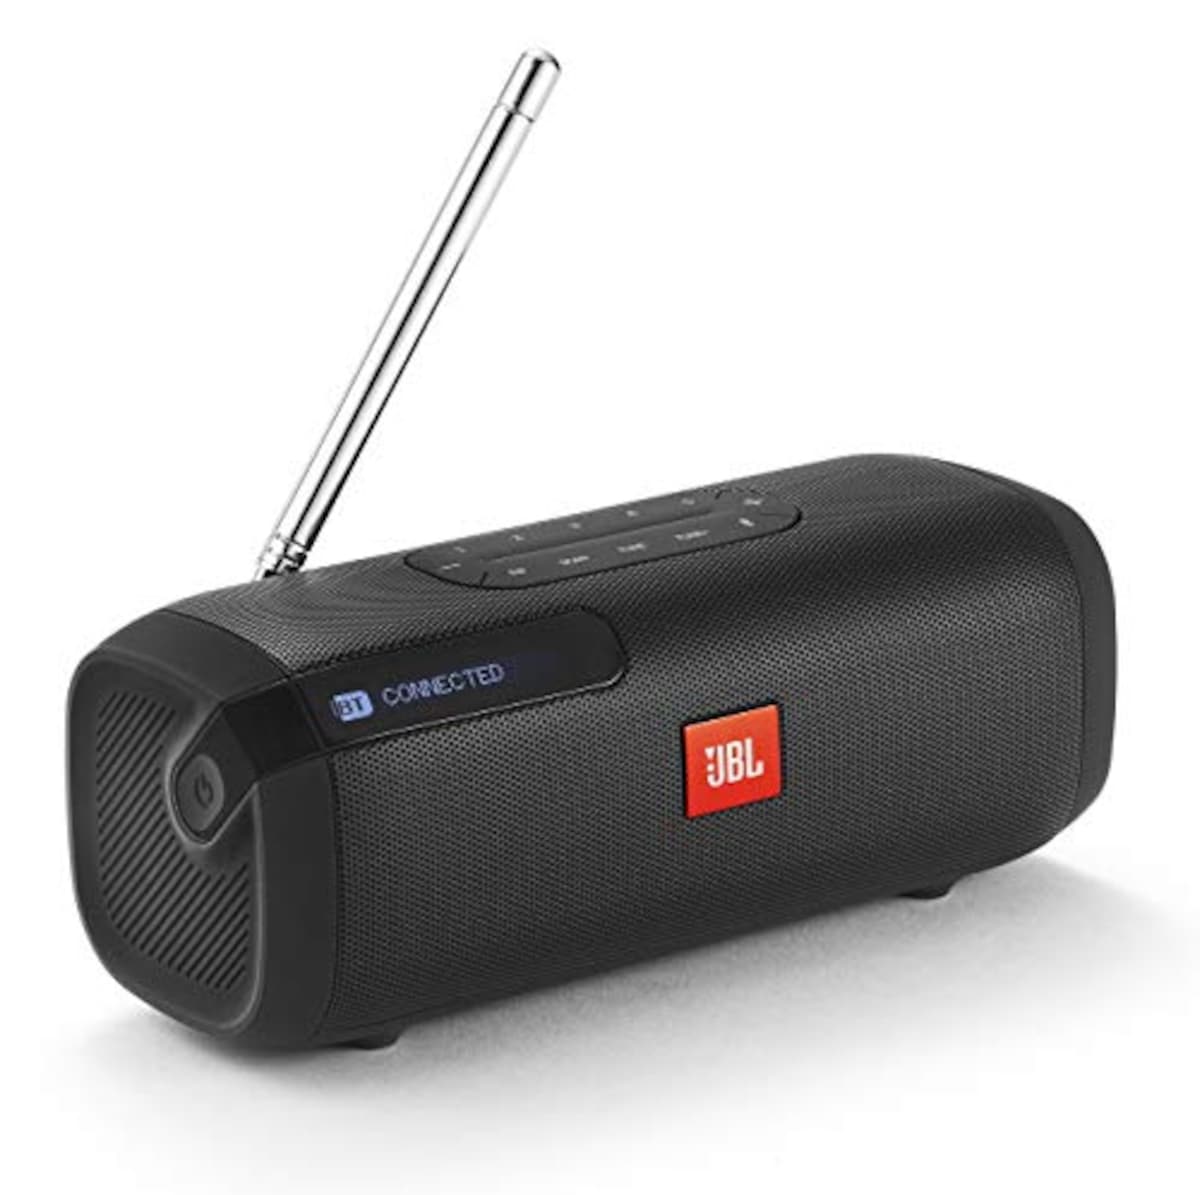 TUNER FM Bluetoothスピーカー ポータブル/ラジオ